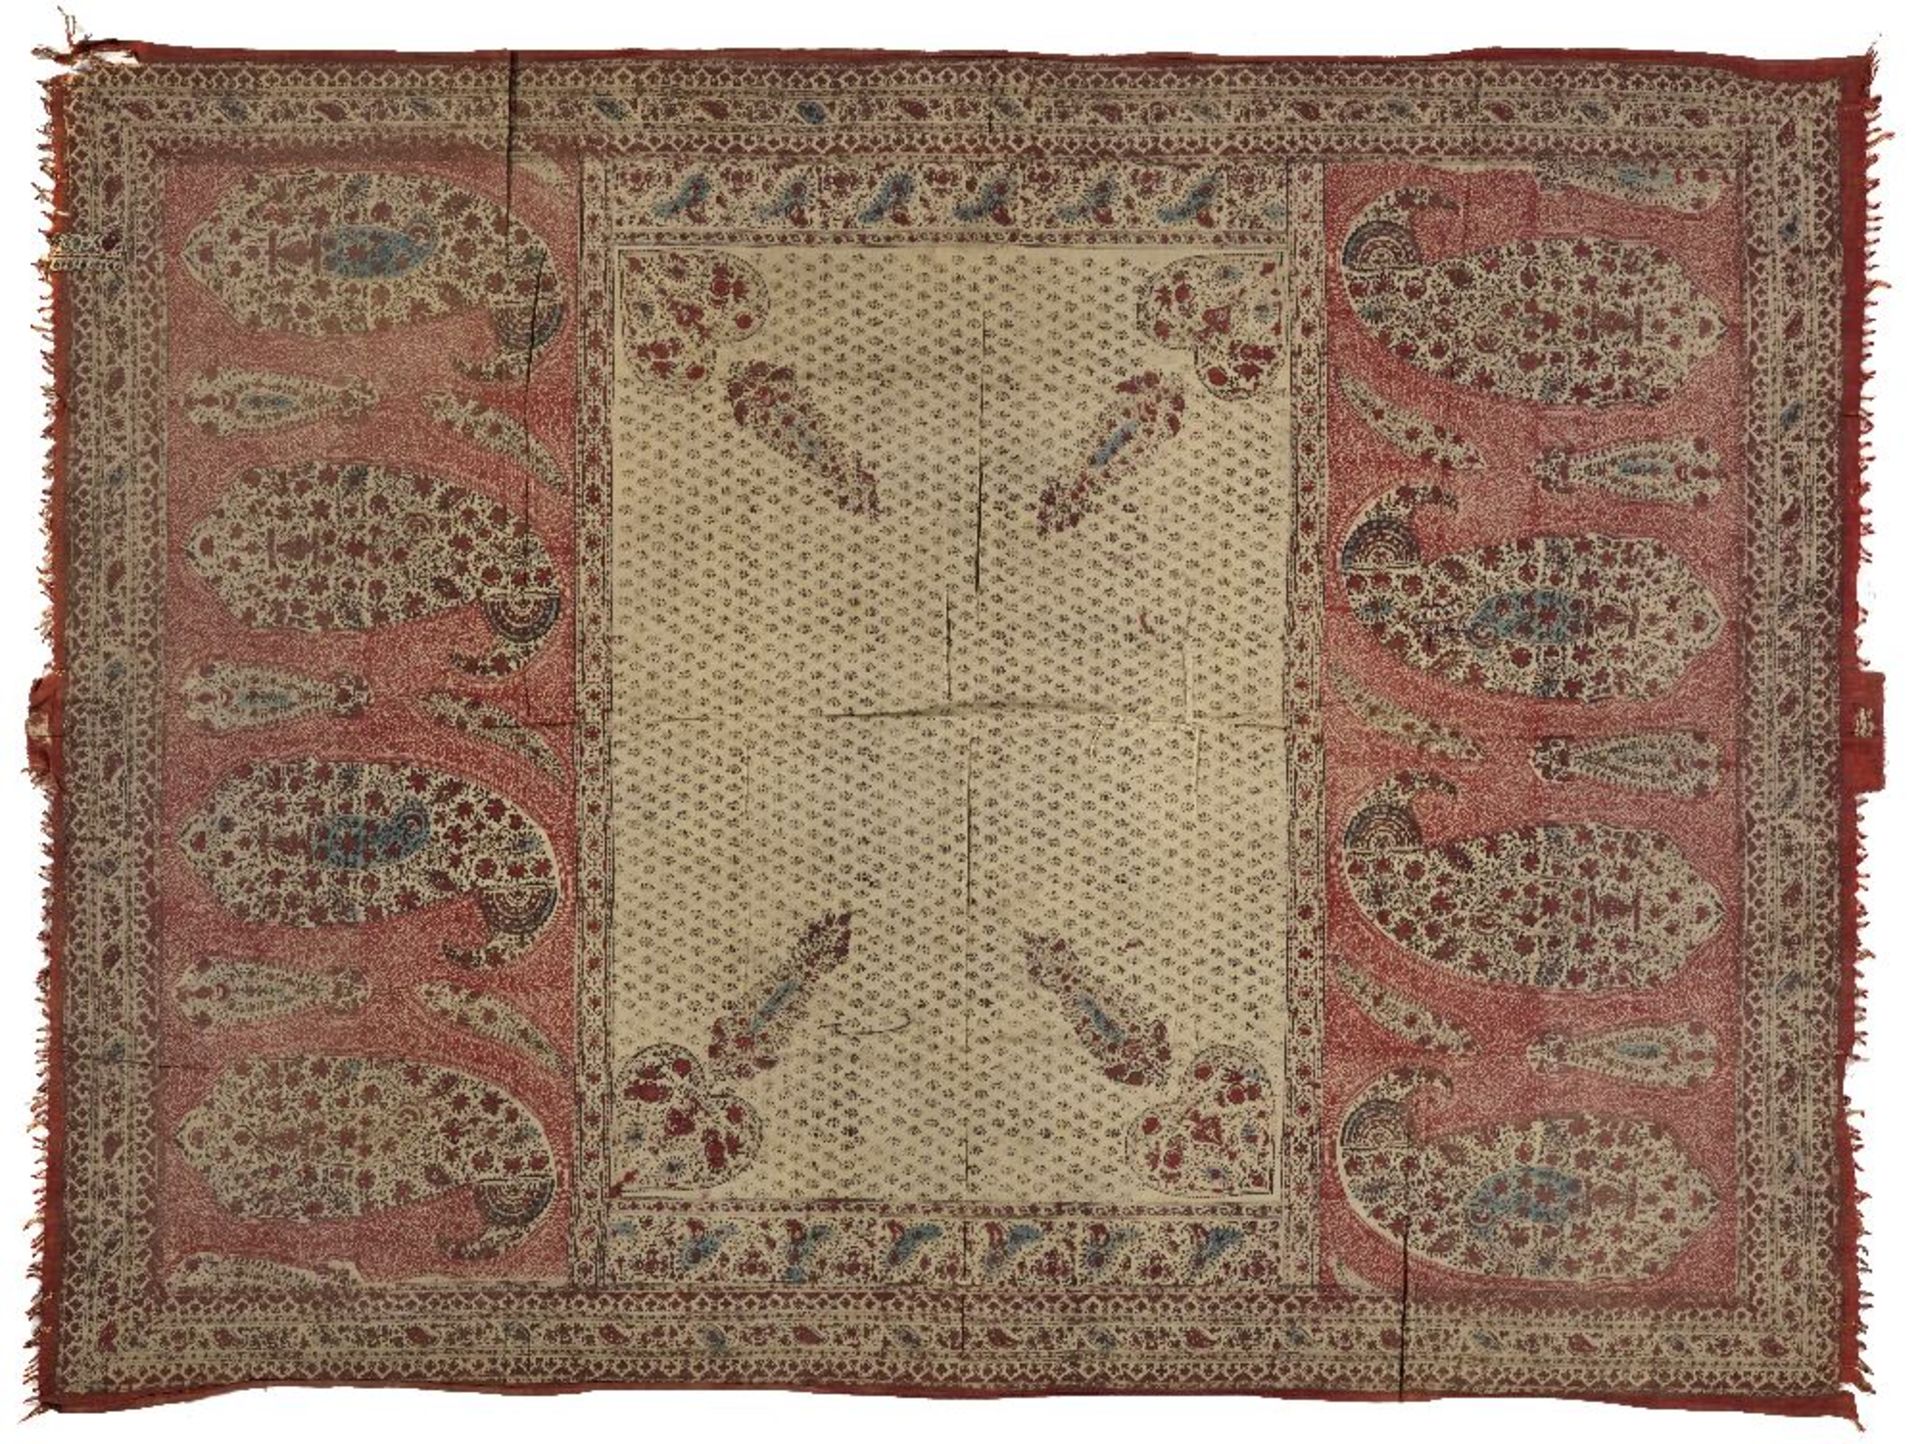 Tenture aux botehsIran, XIXe siècleTenture en coton à motifs imprimés à la main, à décor composé d'